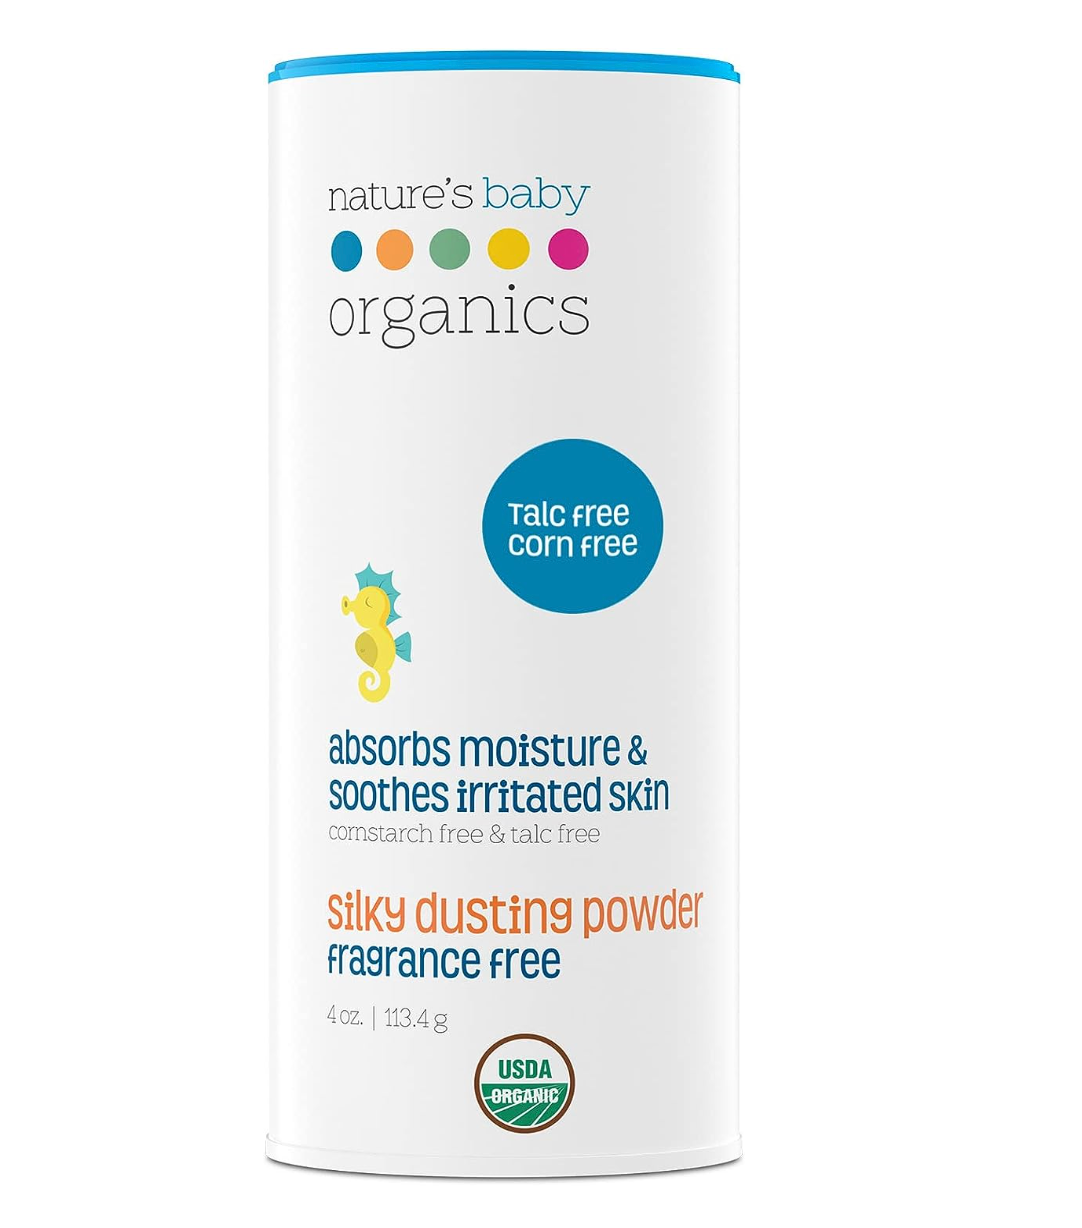 Nature's Baby Organics Baby Powder review 